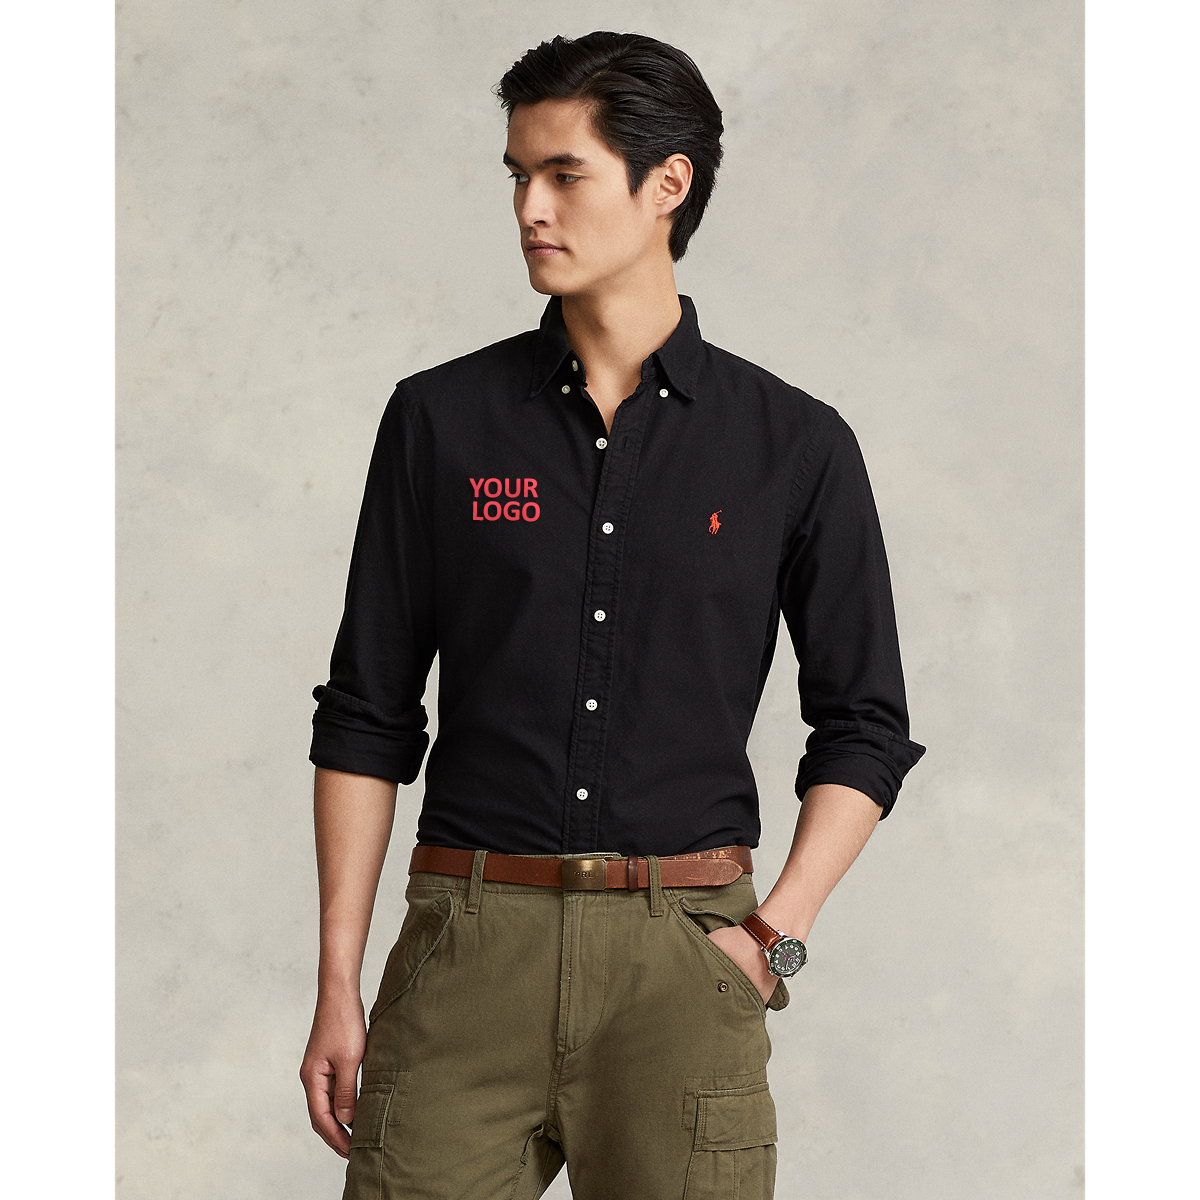 Ralph Lauren Garment Dyed Oxford Sport Shirt - Classic Fit  ZSC32A Black